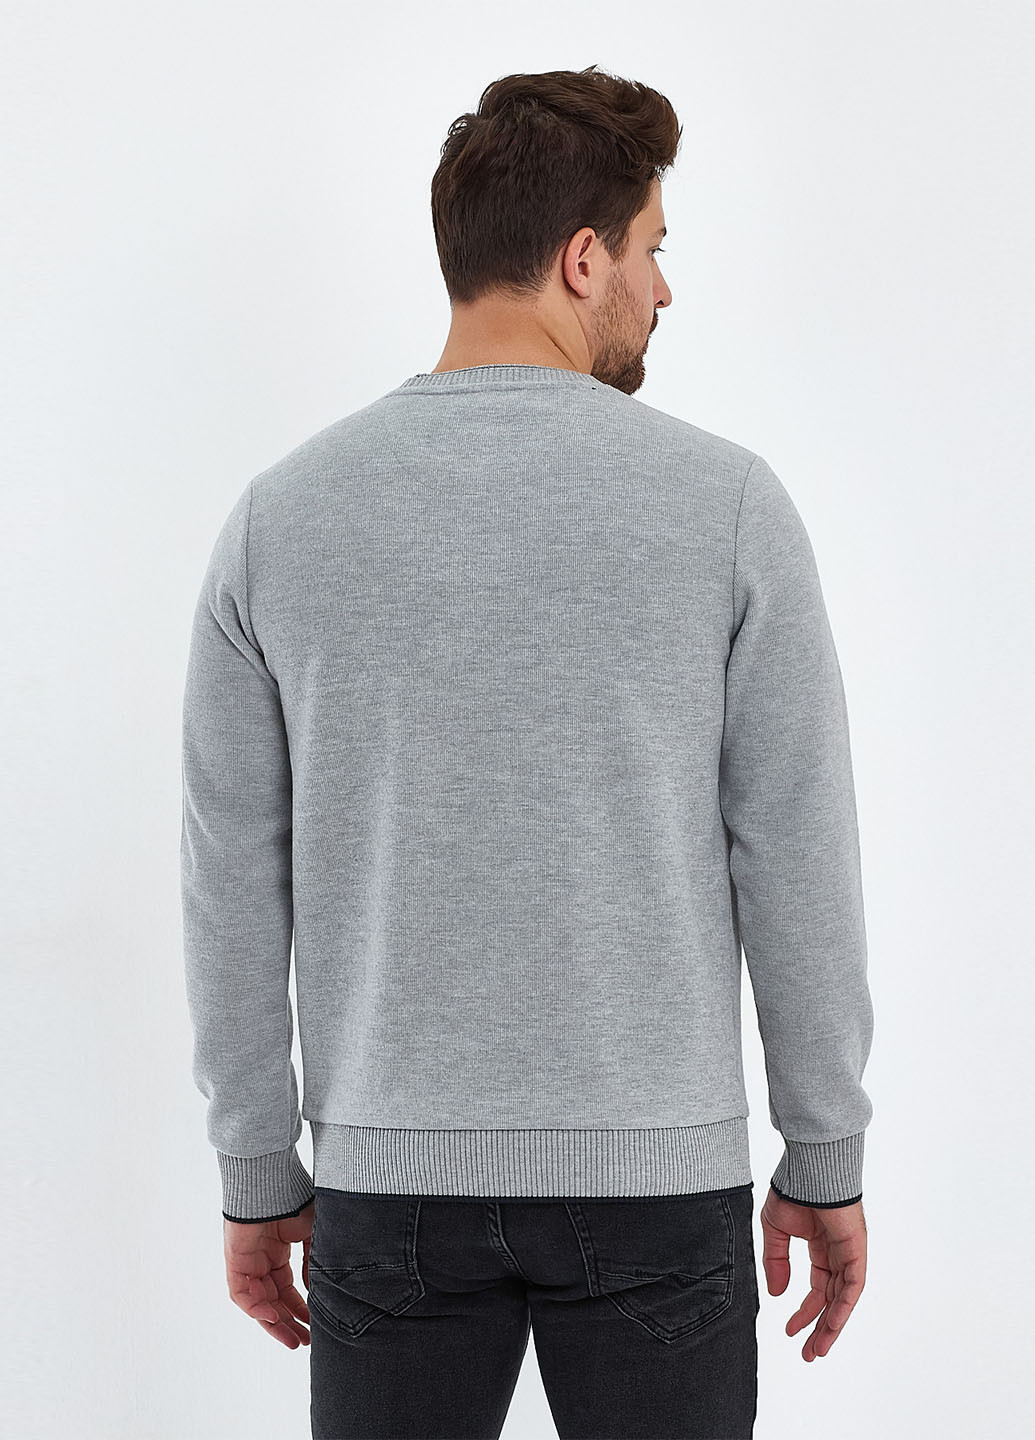 Светло-серый демисезонный свитер джемпер Trend Collection